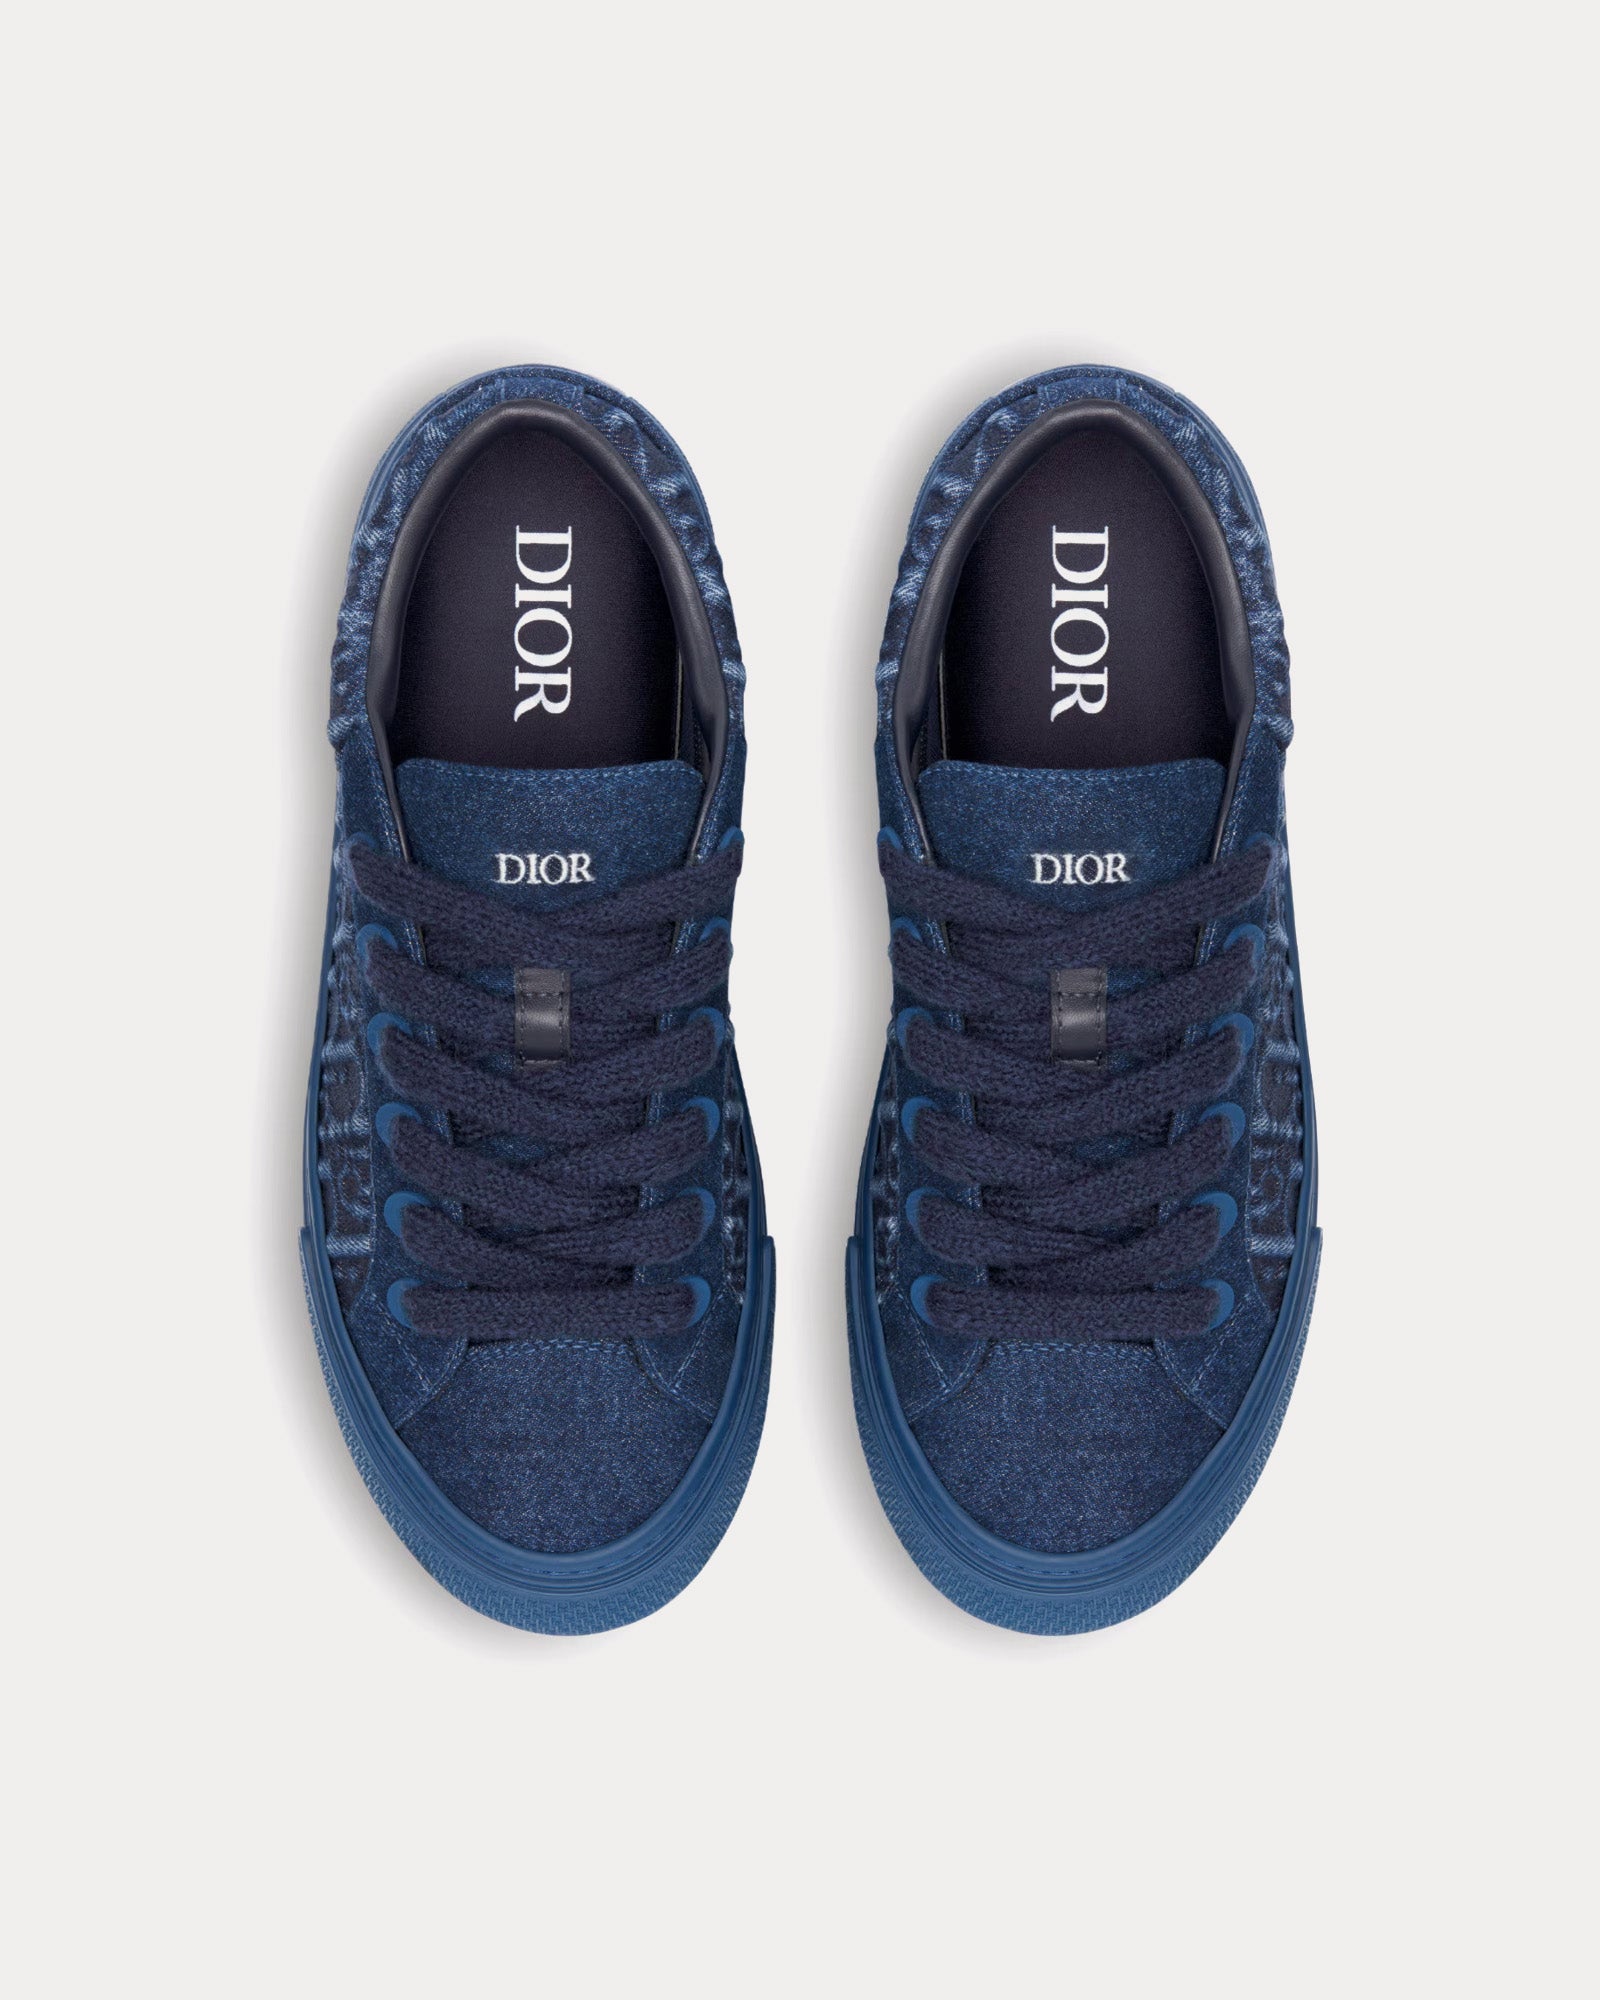 Dior - B33 Dior Oblique Denim Blue Low Top Sneakers